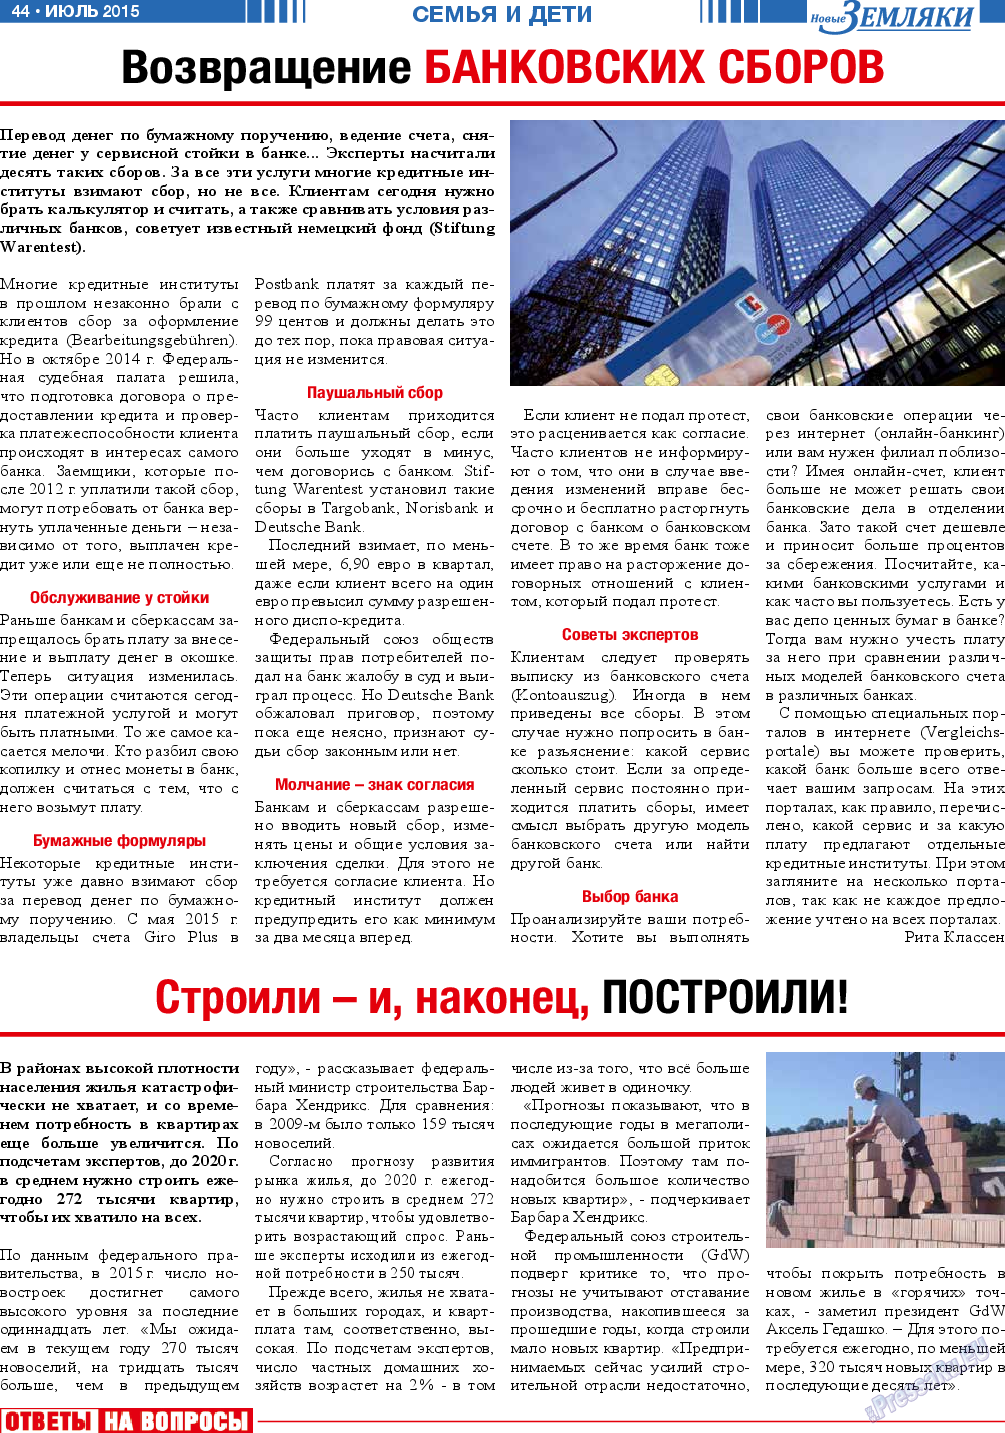 Новые Земляки (газета). 2015 год, номер 7, стр. 44